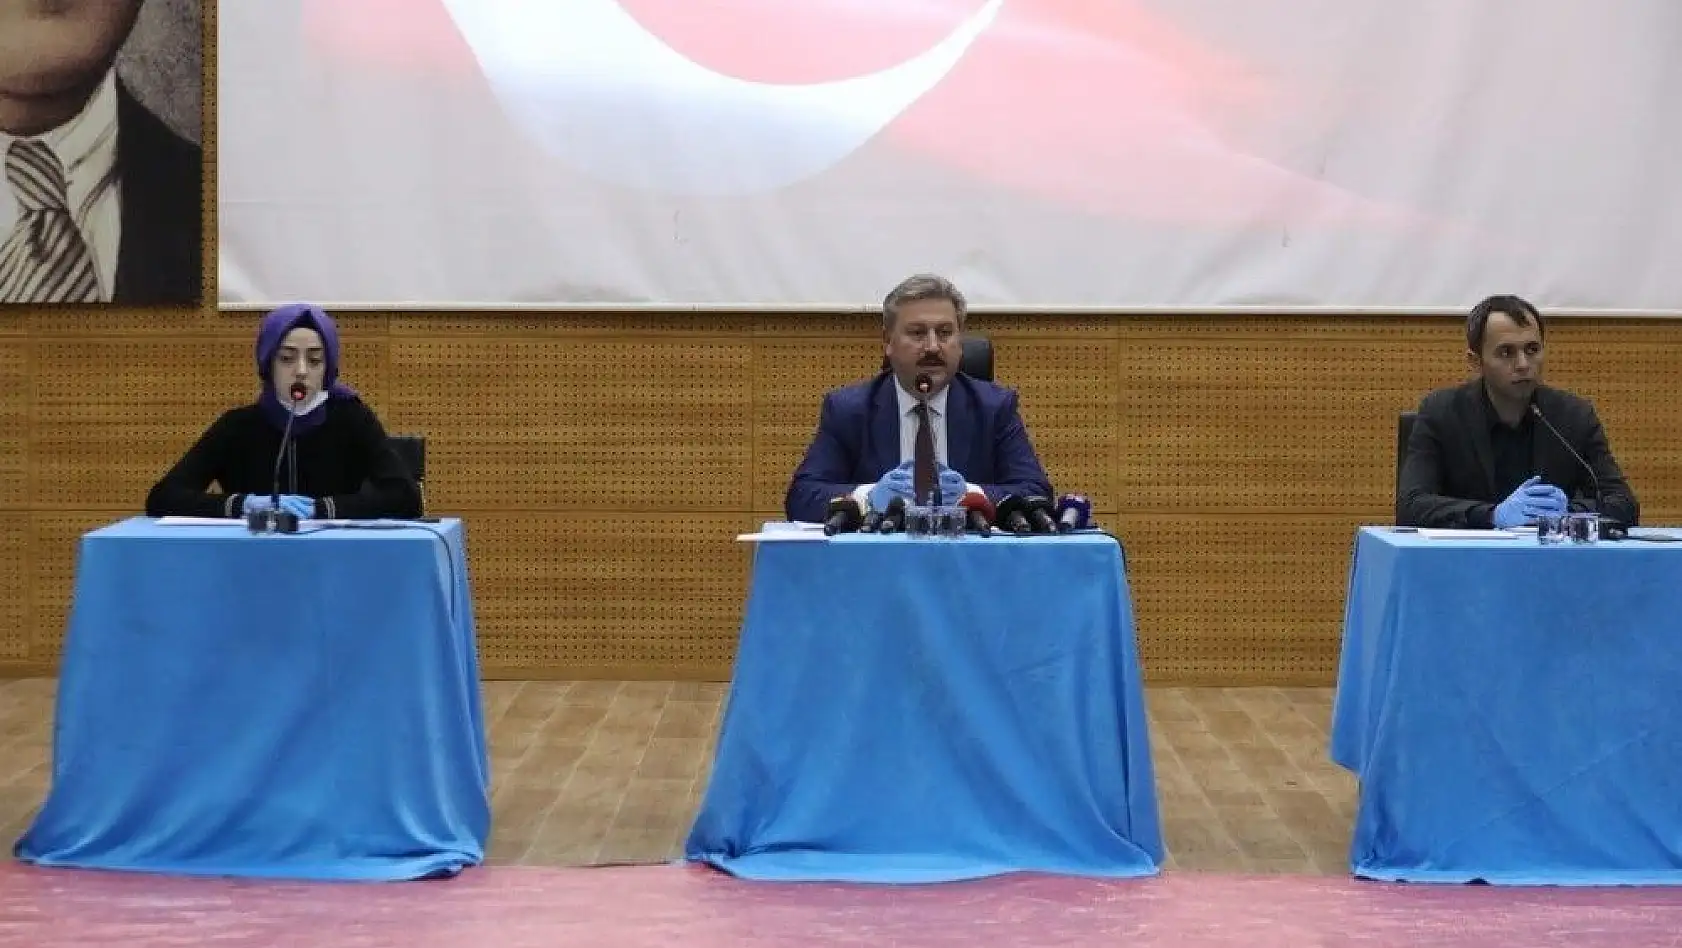 Başkan Palancıoğlu: 'Otopark Yönetmeliği ile ilgili olarak işlemlerde yoğunluğun en aza indirilmesi öngörülmüştür'
